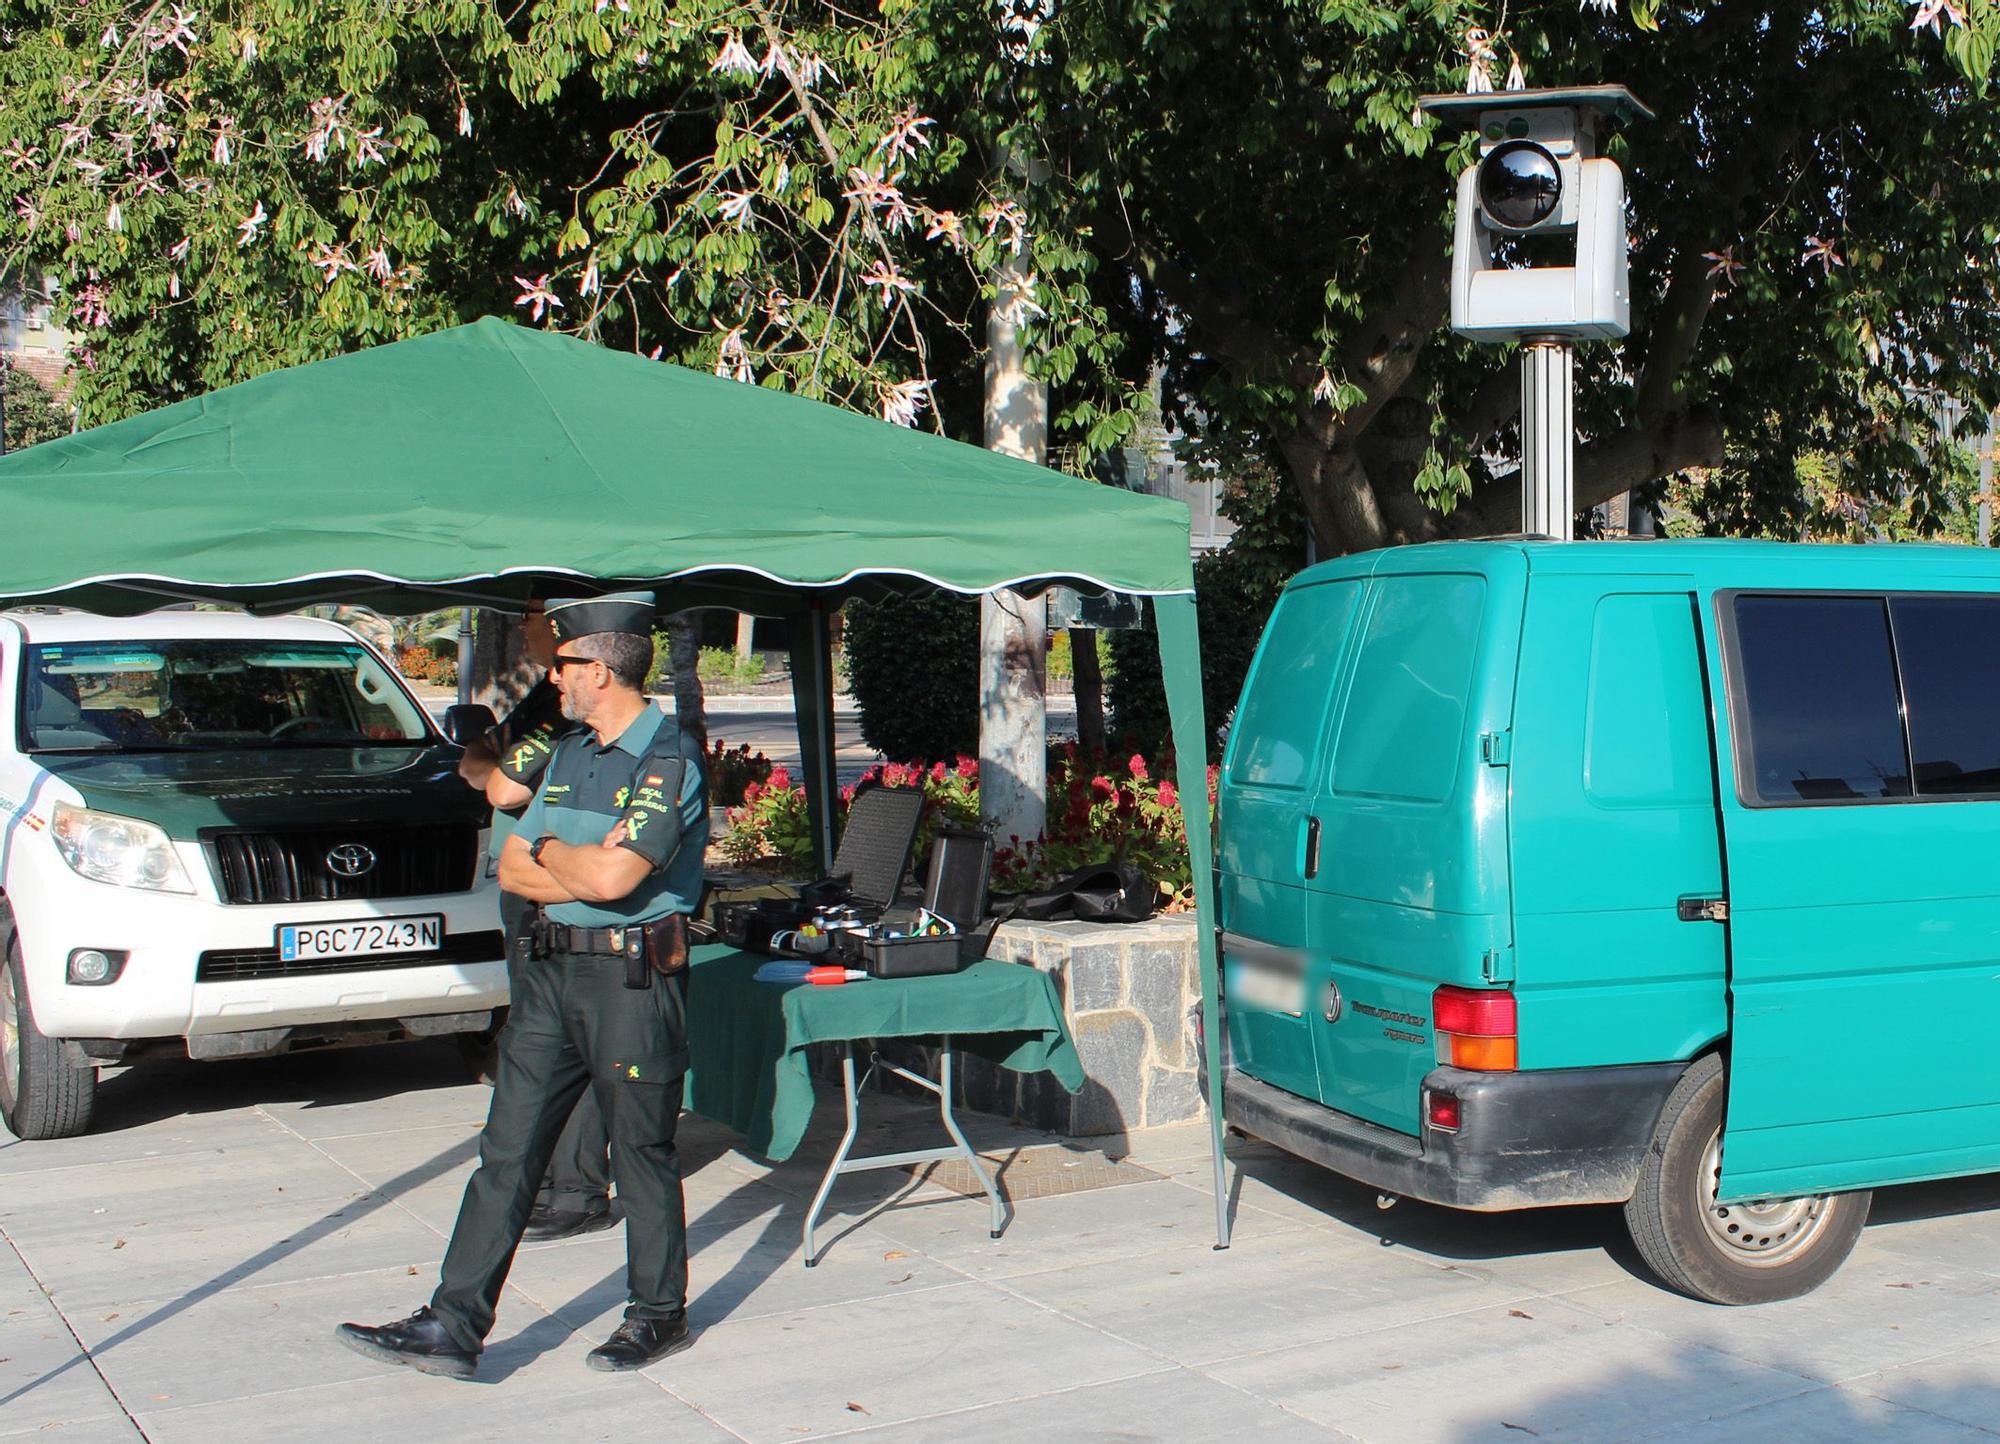 La Guardia Civil expone sus recursos humanos y técnicos por la festividad de su Patrona